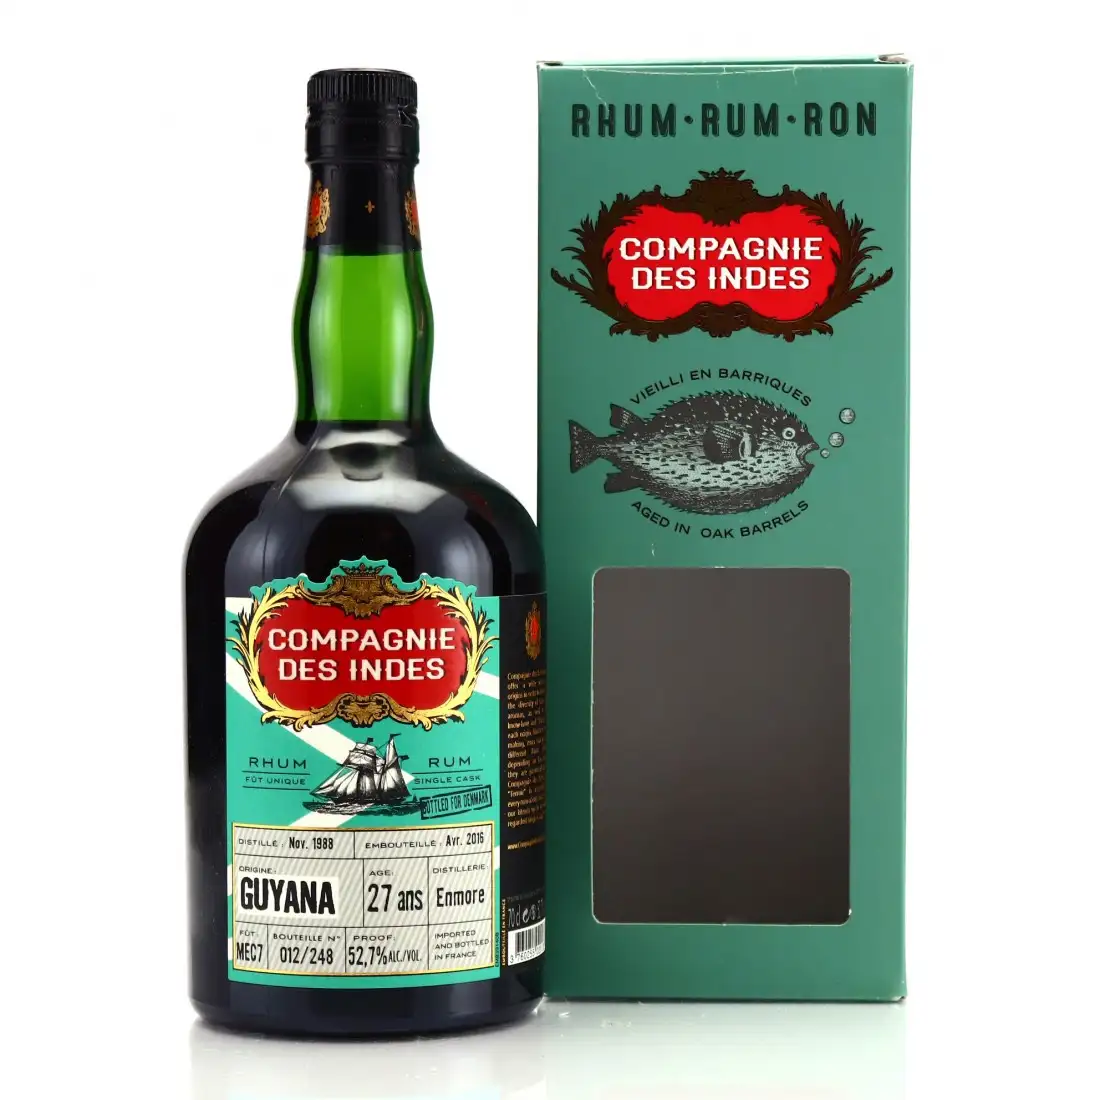 Image of the front of the bottle of the rum Guyana (Bottled for Denmark)